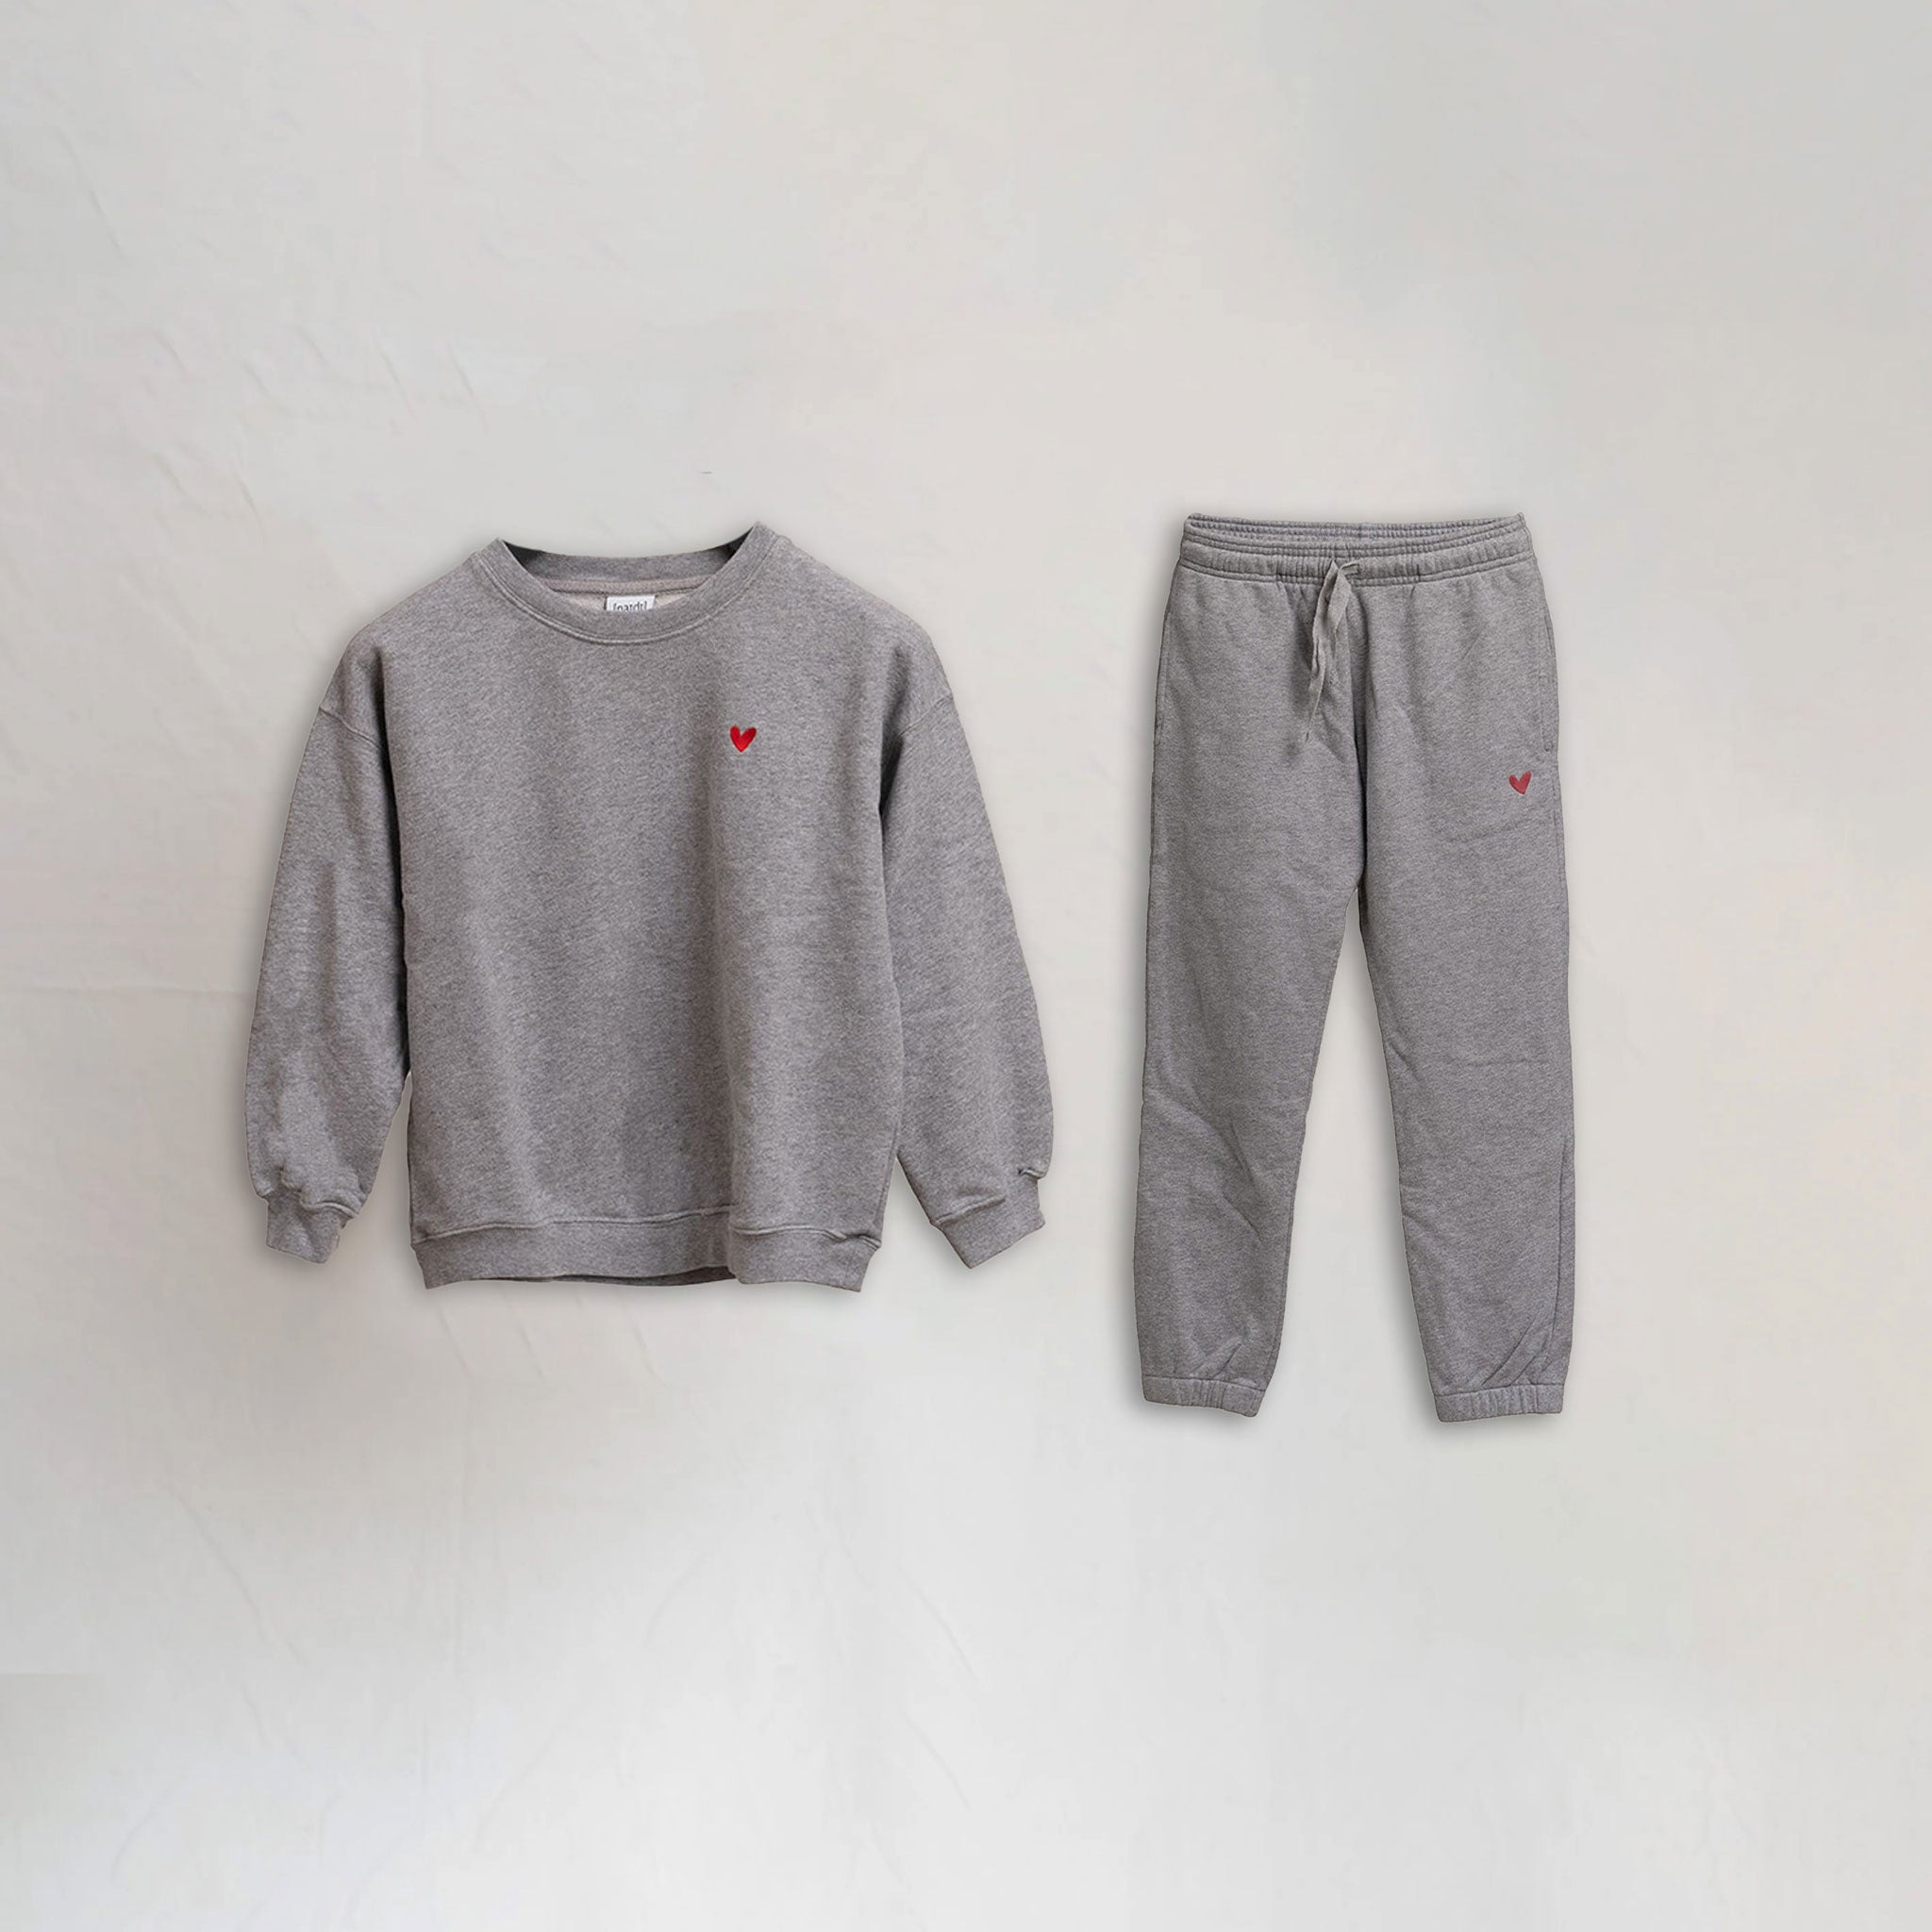 Kinder Set - Sweatshirt / Jogginghose